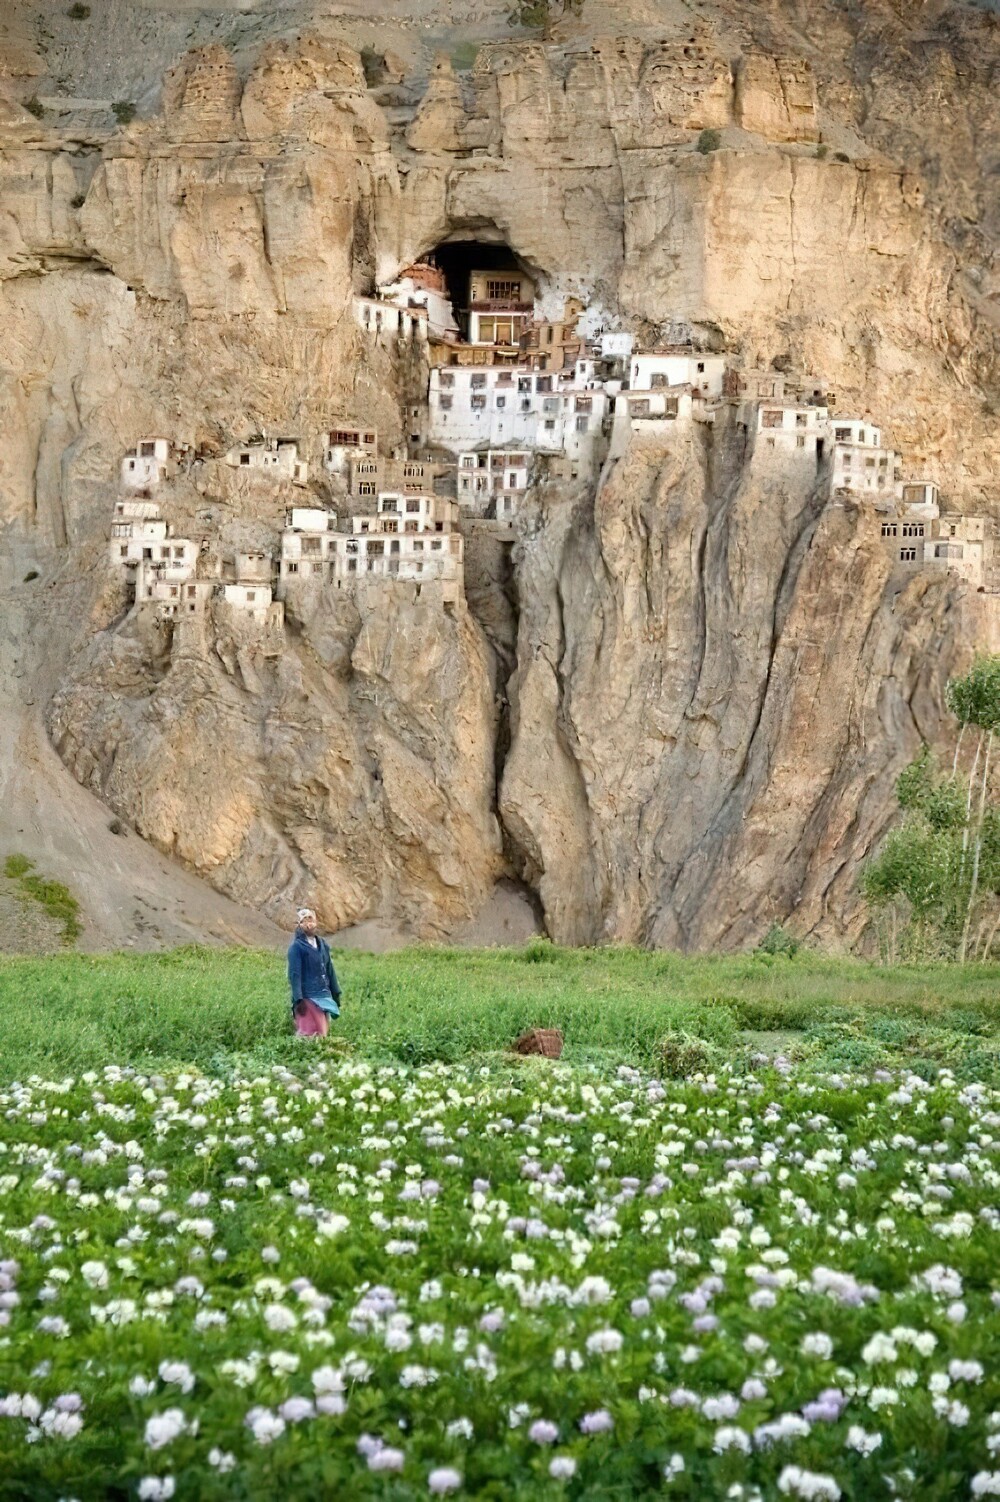 20. Монастырь Пхуктал построен вокруг естественной пещеры, которую, как полагают, посещали многие мудрецы, учёные, переводчики и монахи около 2550 лет назад